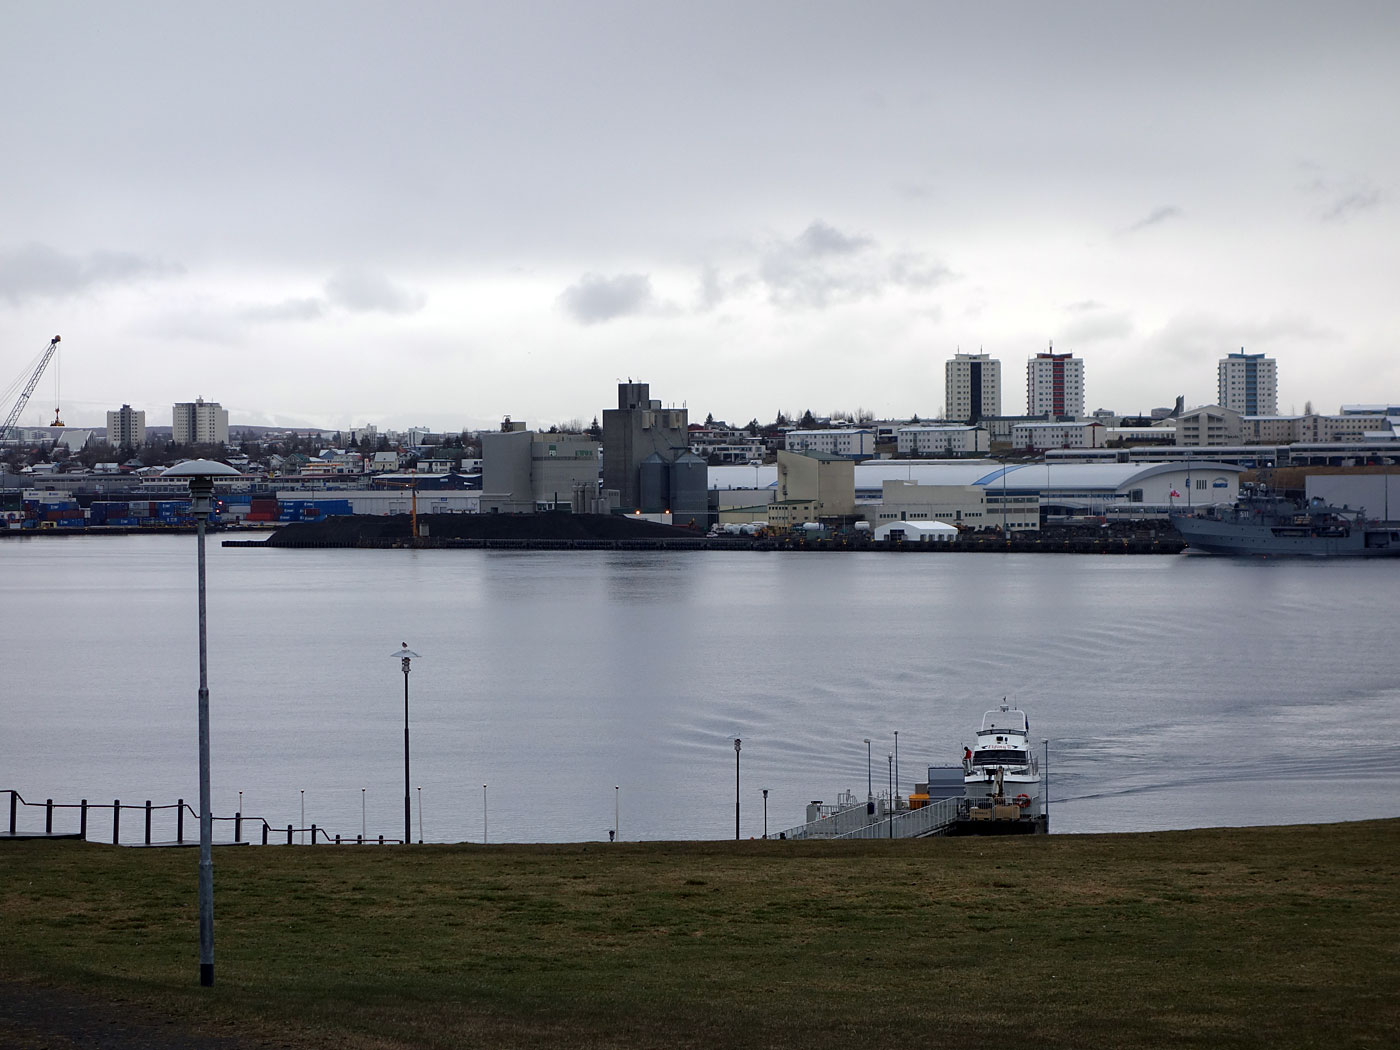 Viðey. Spring trip (with rain) to Viðey. - On Viðey. I. The newer harbour of Reykjavík. (10 May 2013)